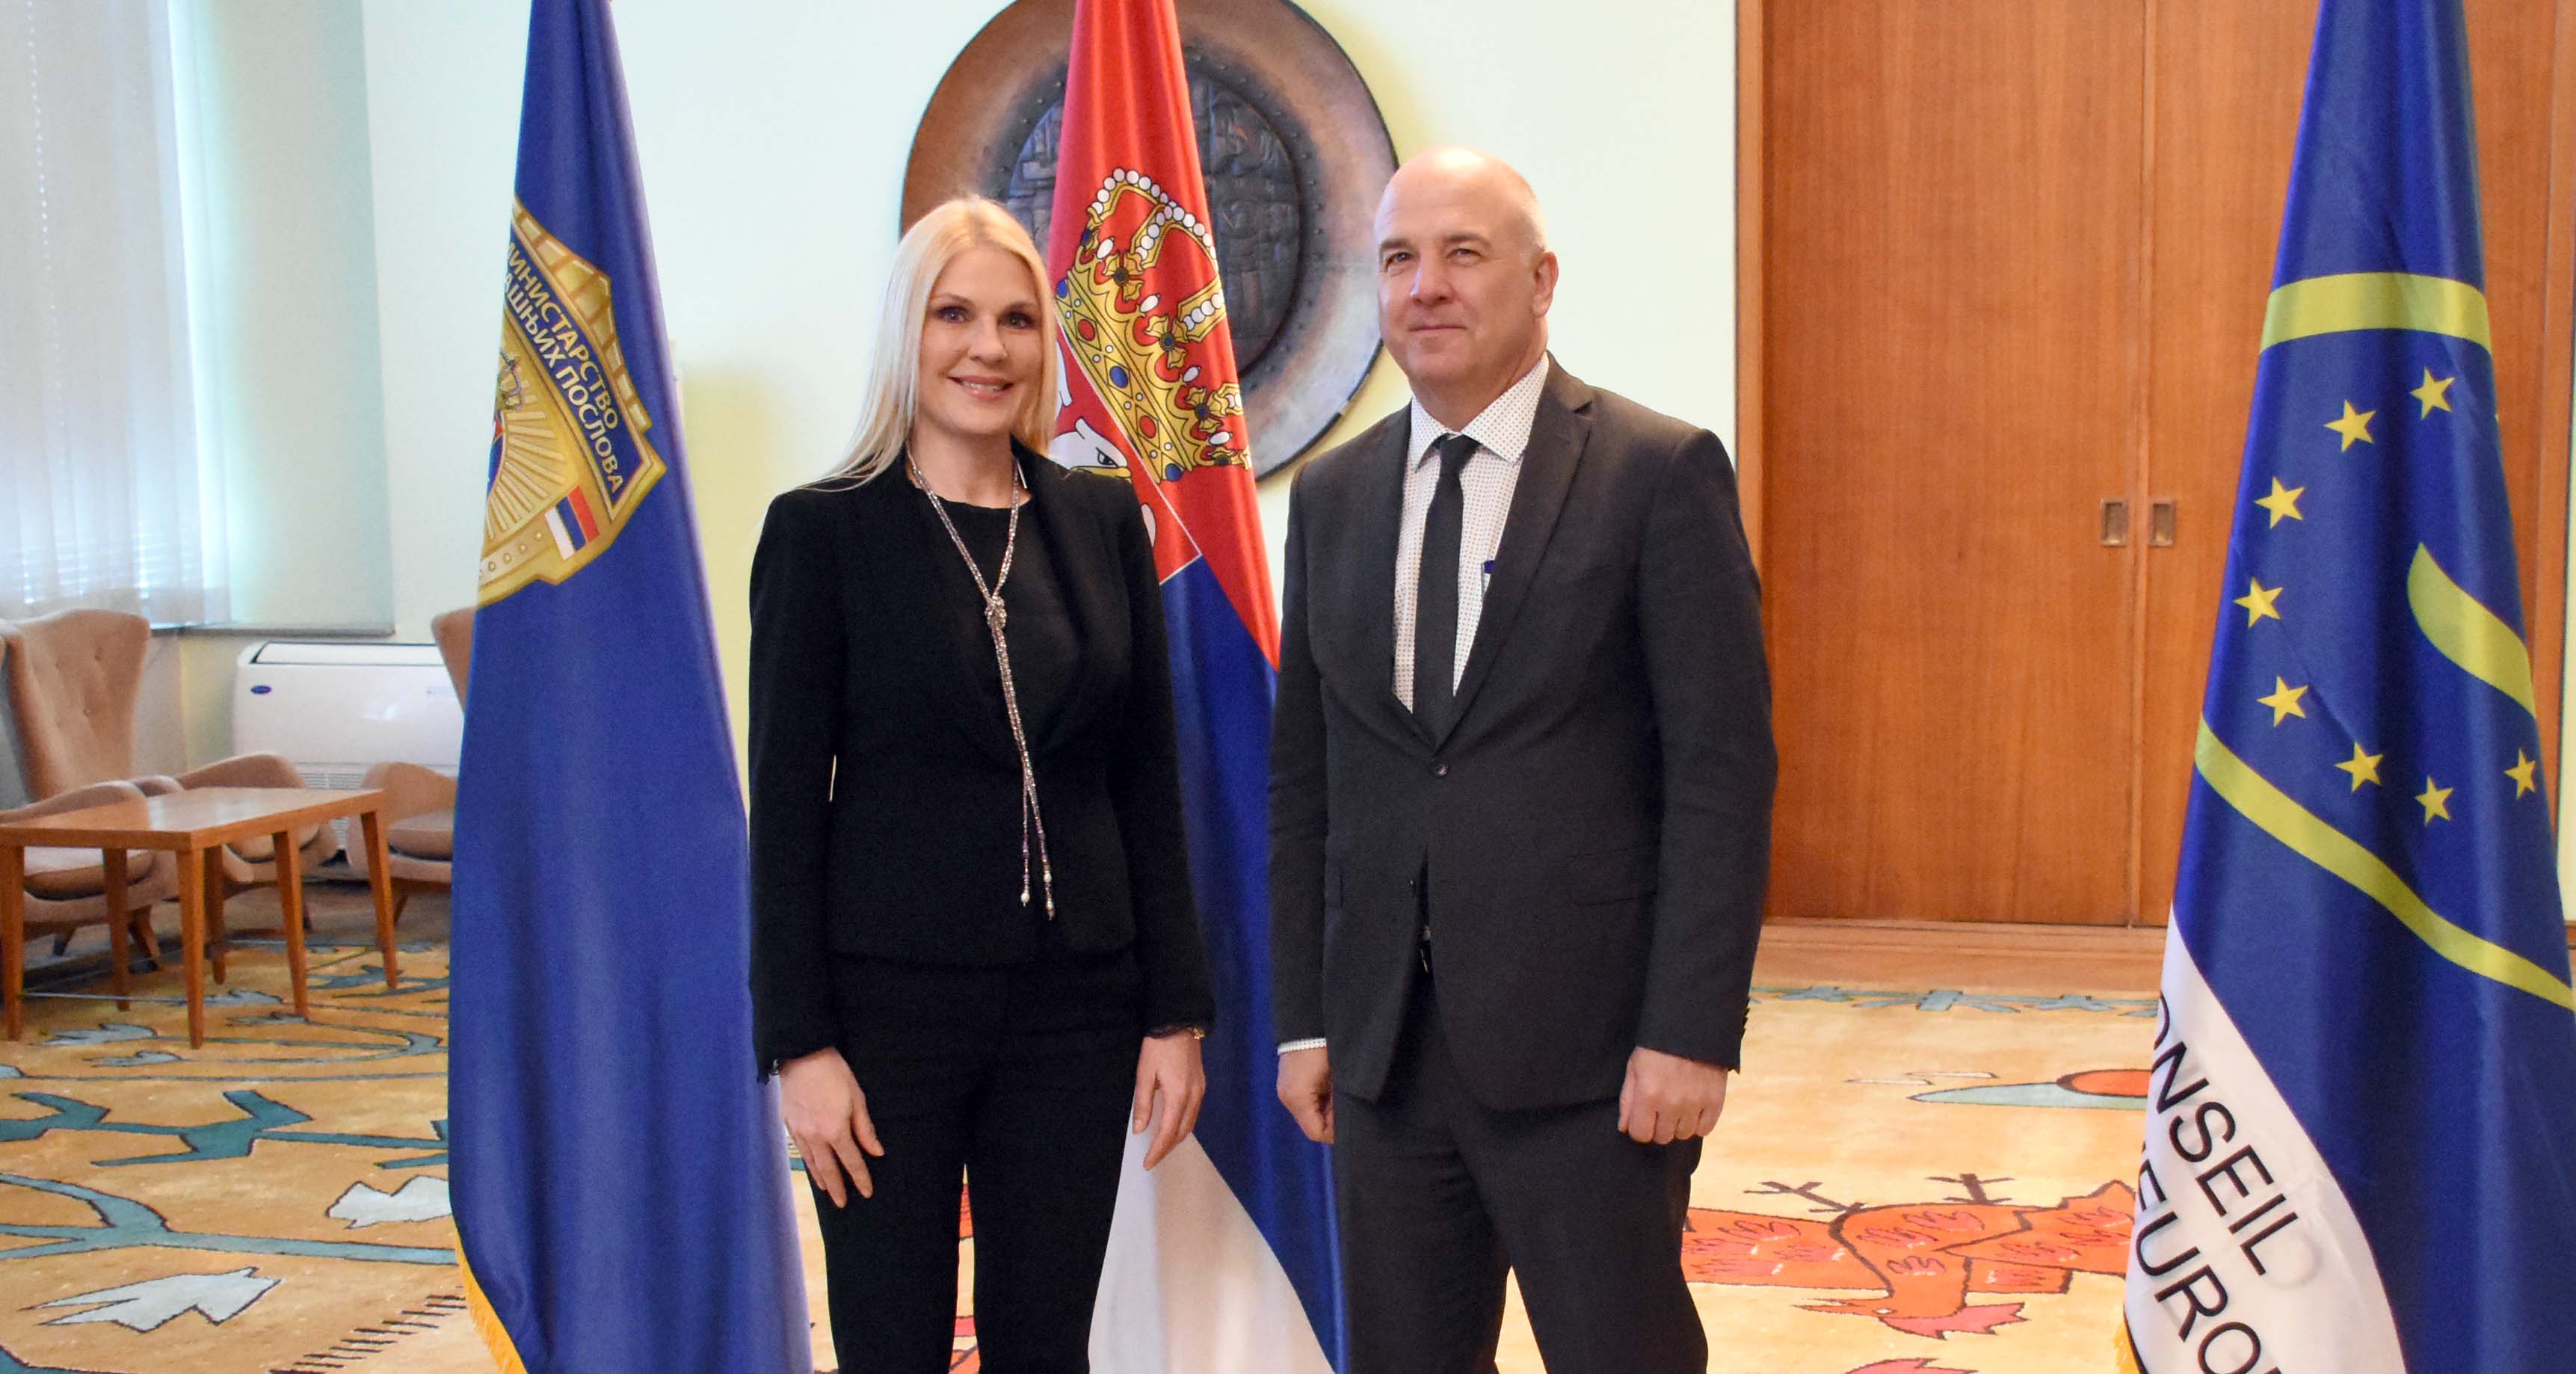 Државни секретар МУП-а Биљана Поповић Ивковић разговарала је са комесаром за људска права СЕ Нилсом Муижниексом